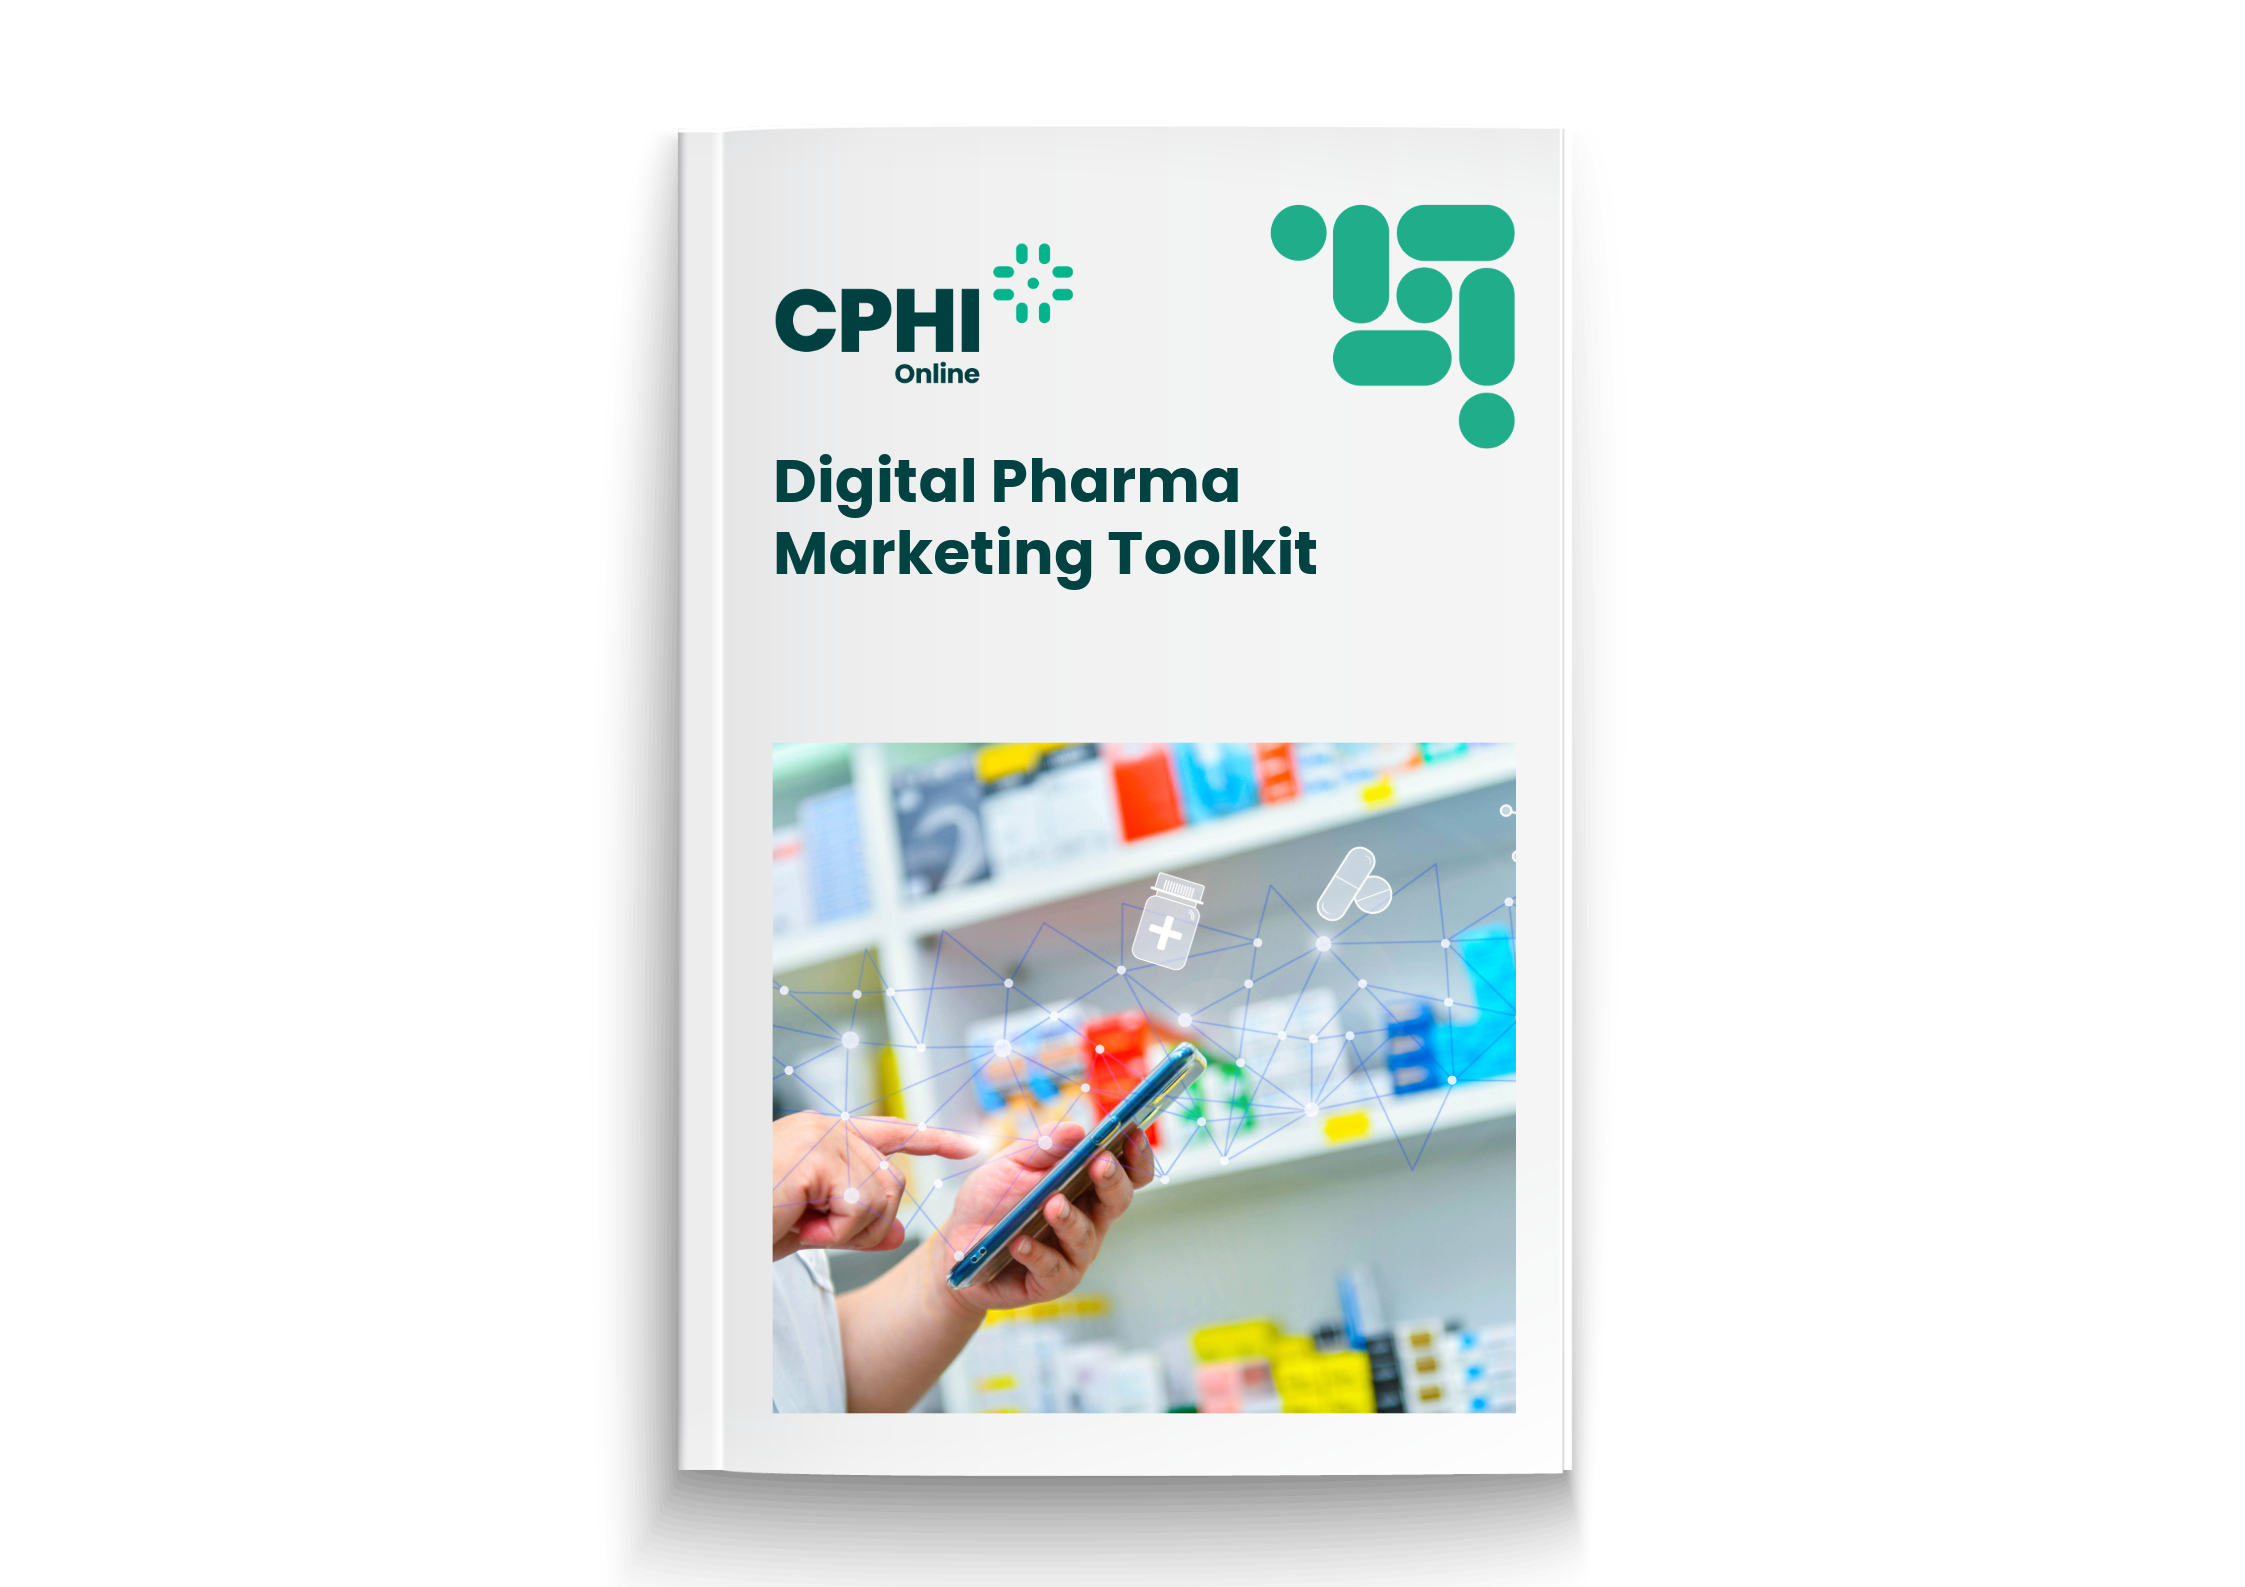 Digital Pharma Marketing Toolkit